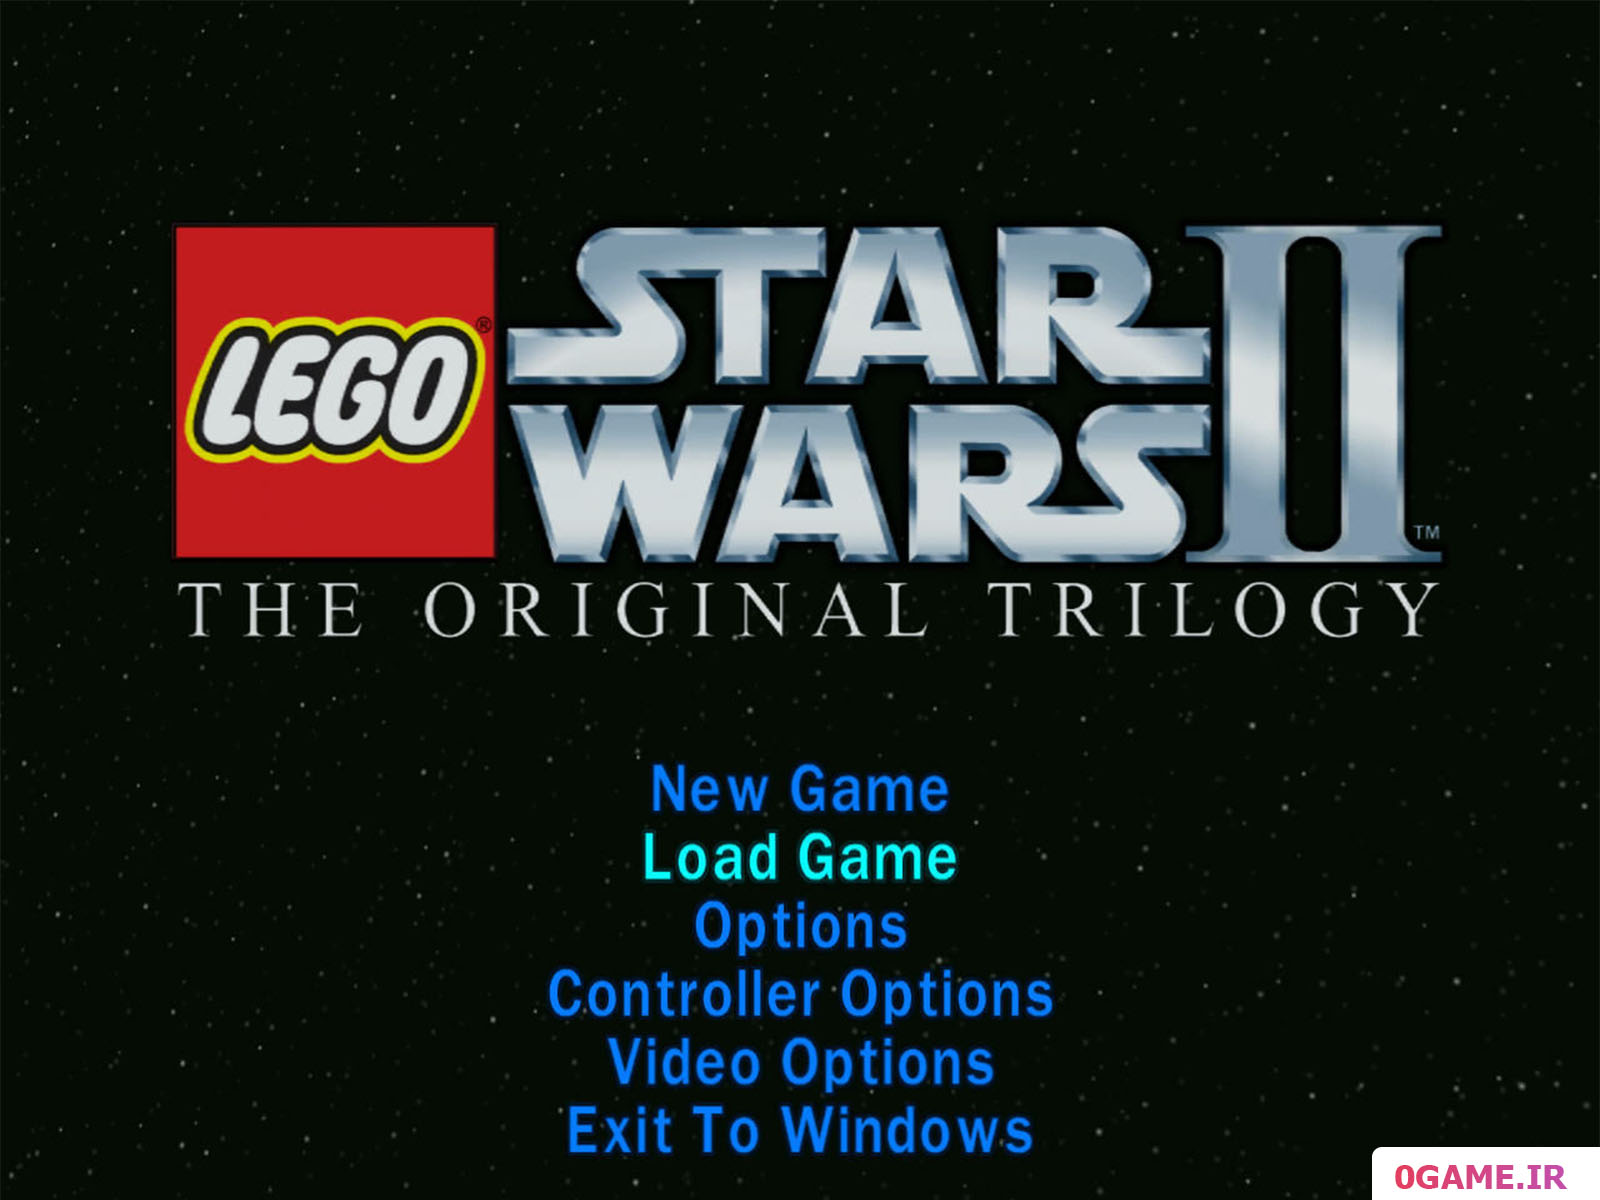 دانلود بازی لگو جنگ ستارگان 2 (Lego Star Wars II The Original Trilogy) نسخه کامل برای کامپیوتر